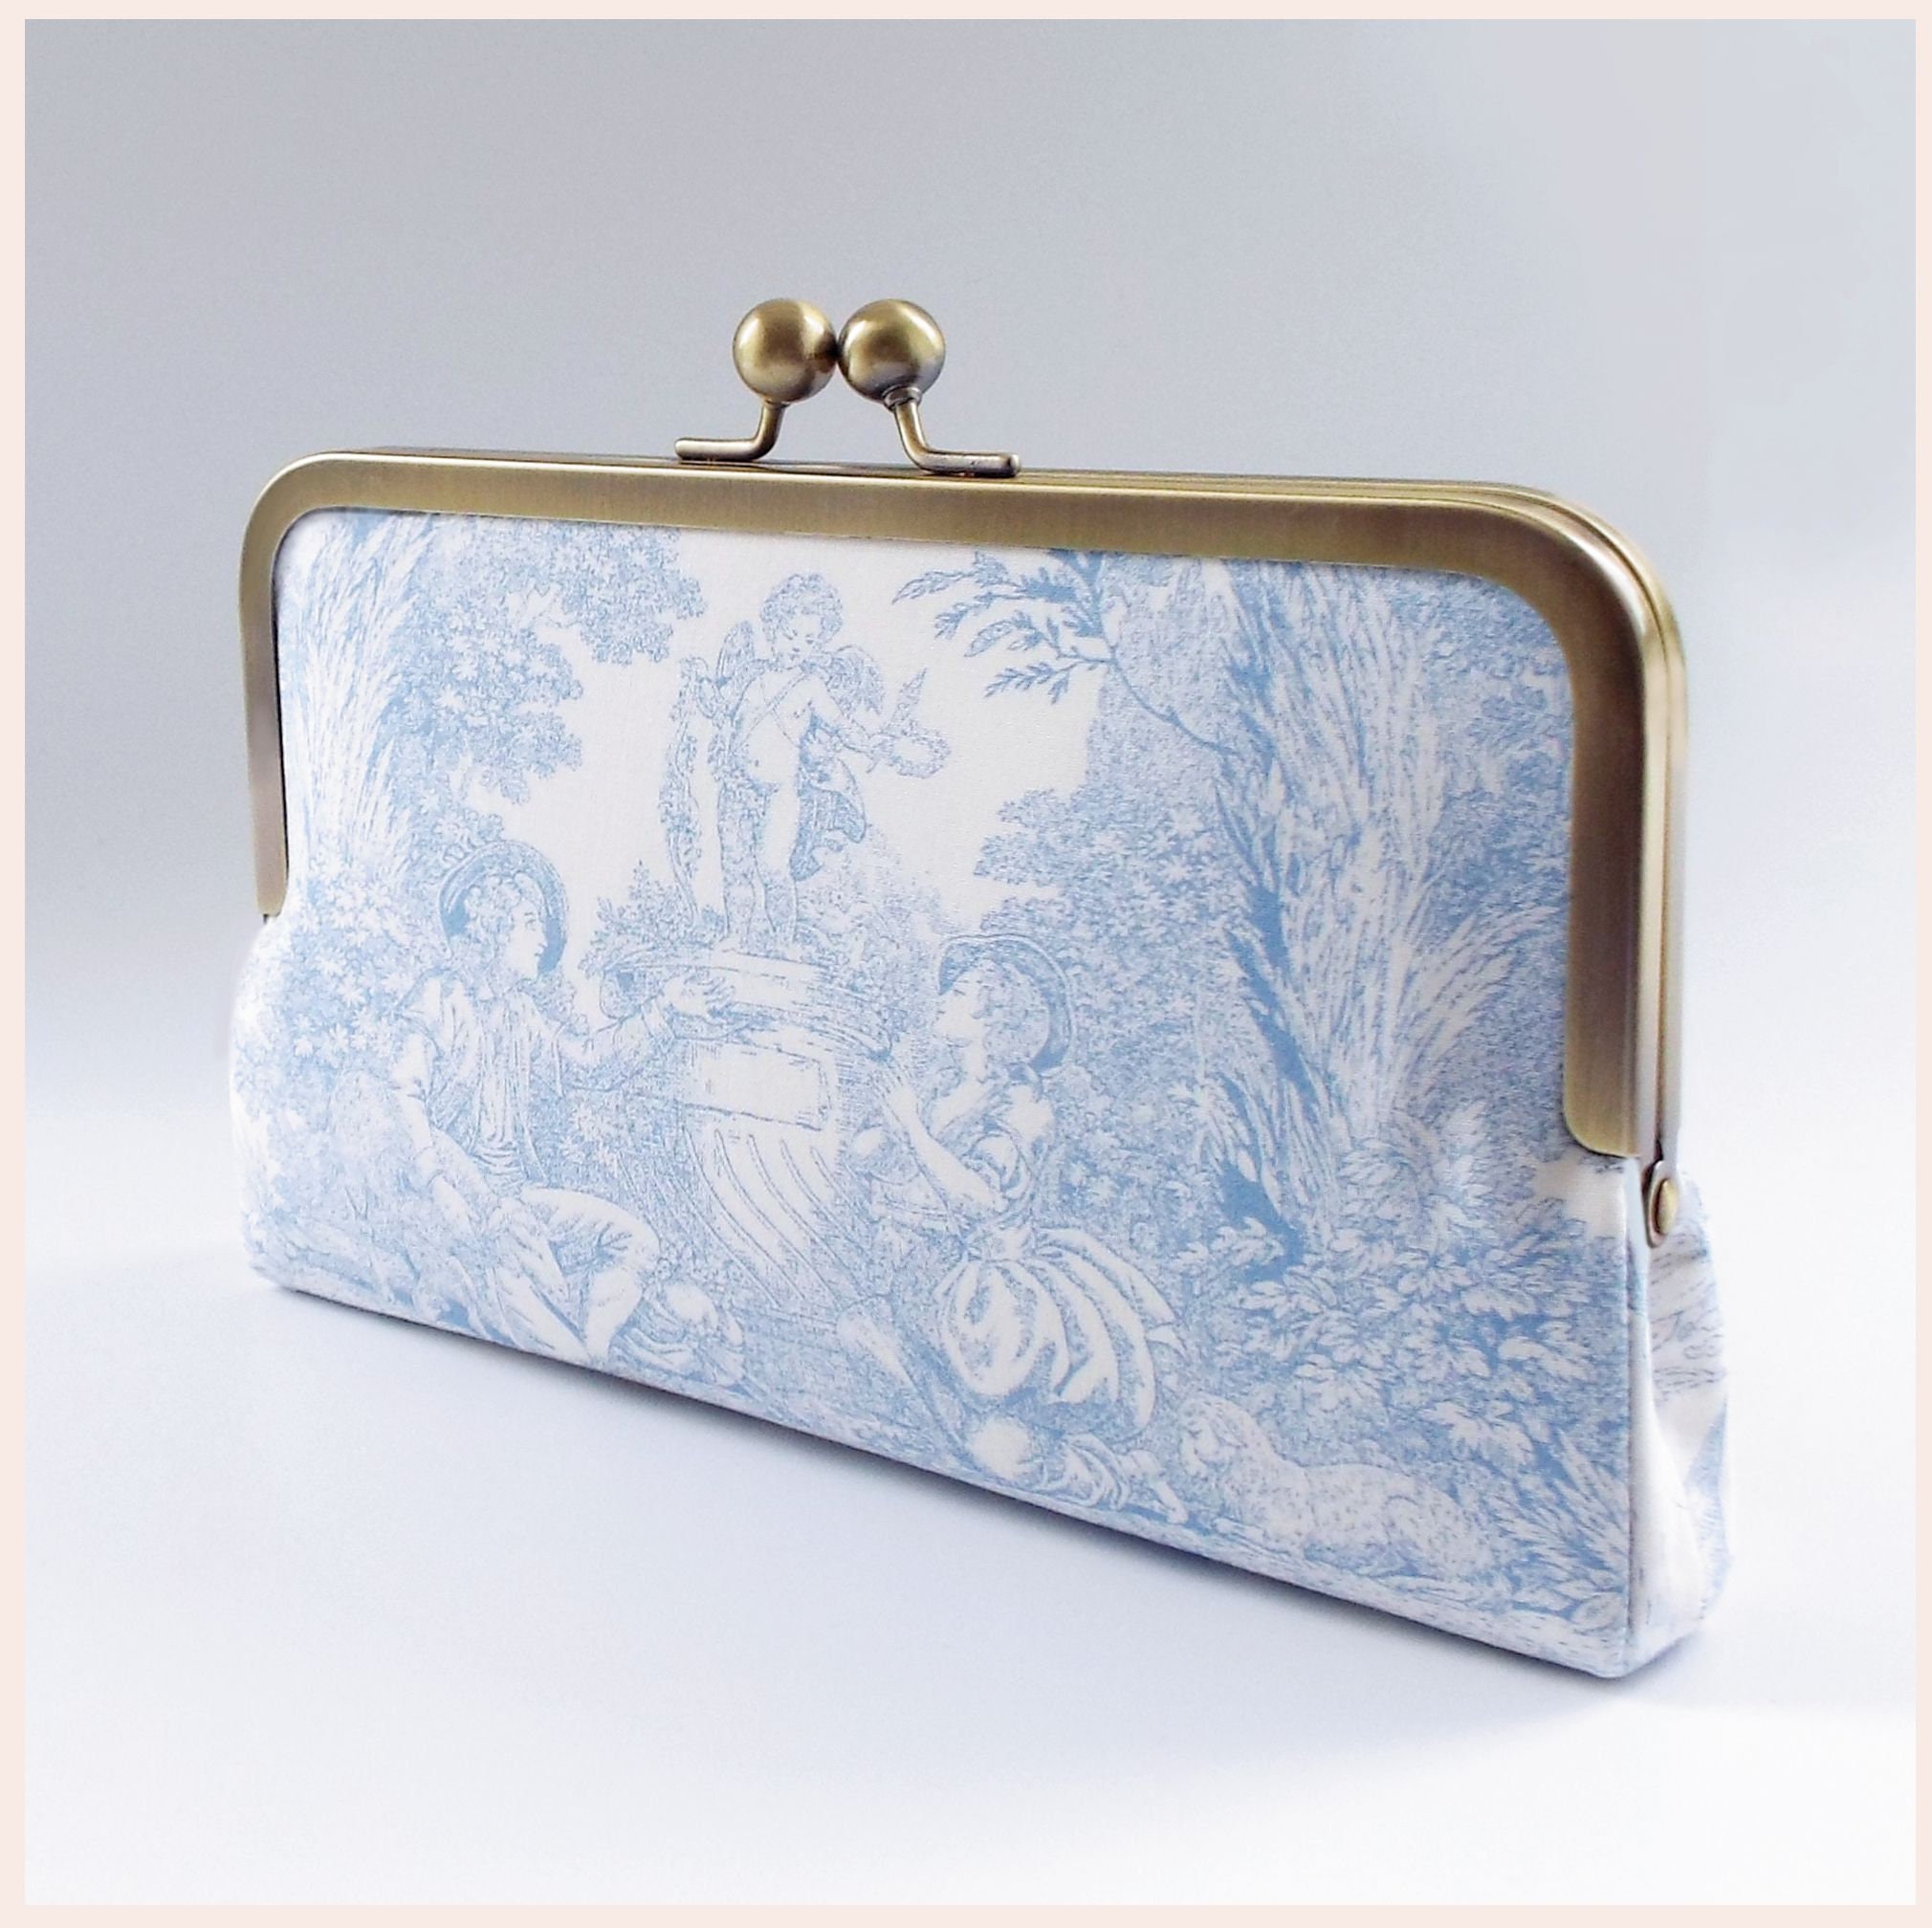 Embellished denim clutch bag in blue - Roger Vivier | Mytheresa